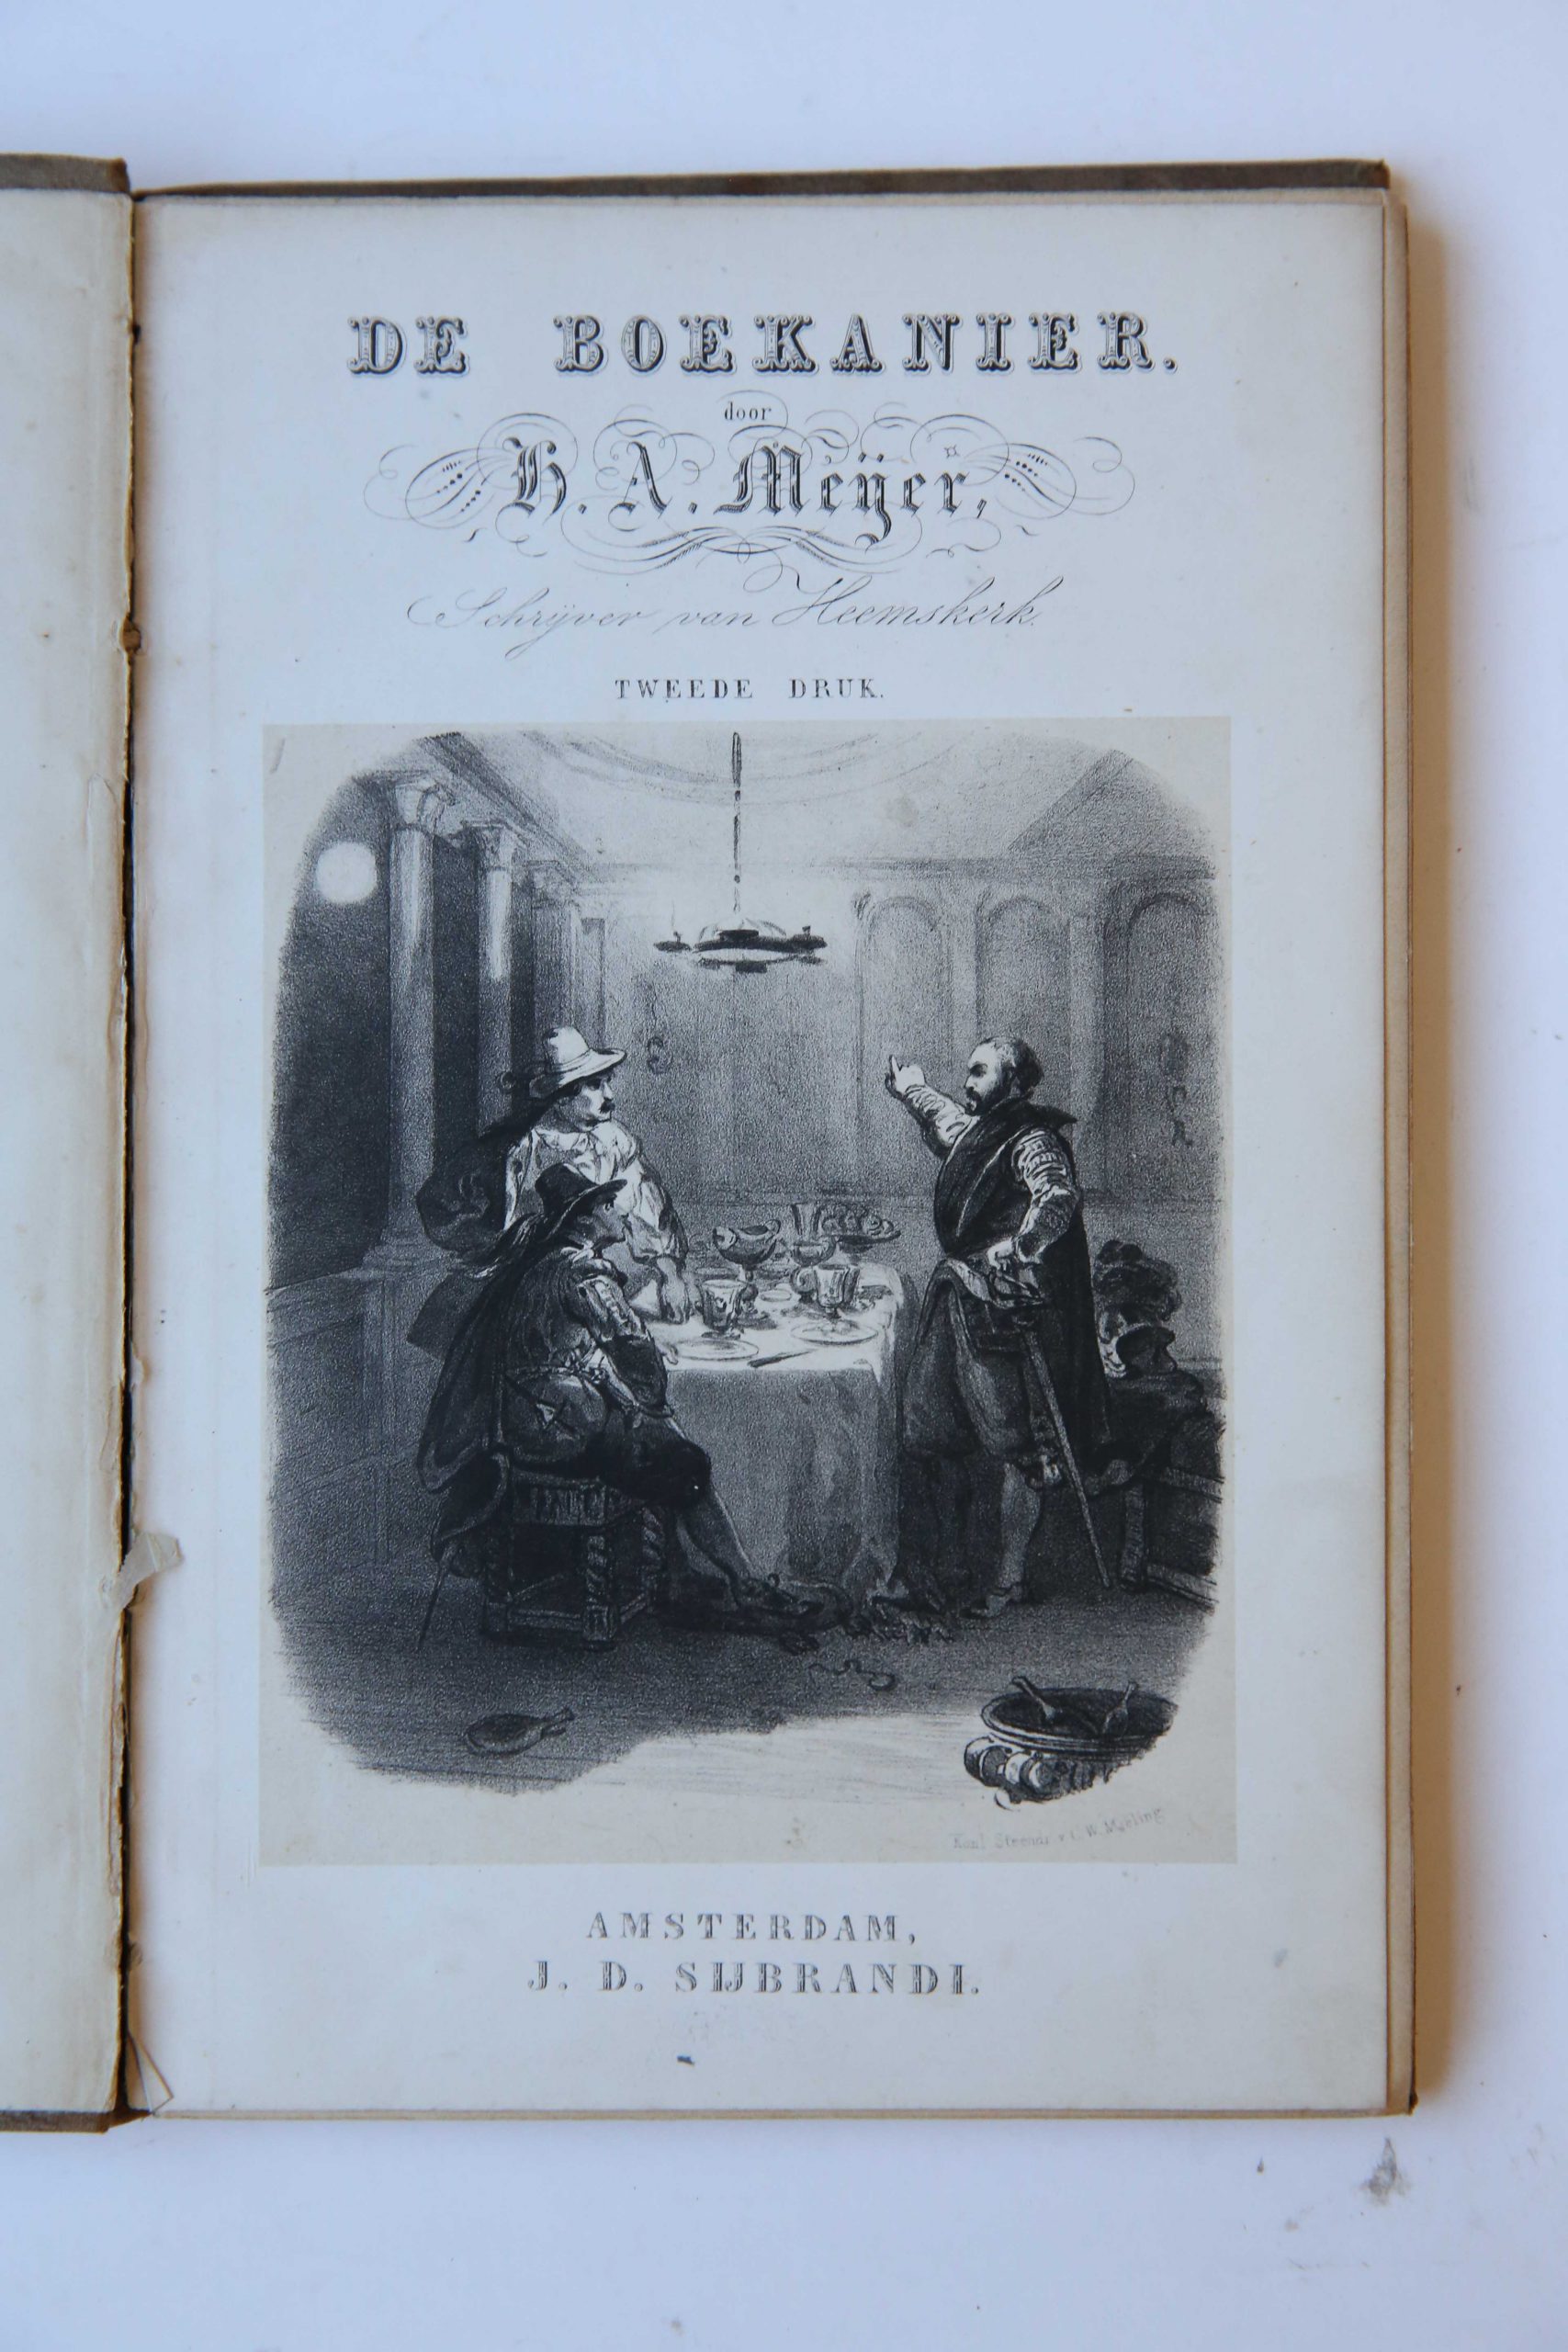 De Boekanier door H.A. Meijer, schrijver van Heemskerk, Tweede druk, Amsterdam, J.D. Sijbrandi, [1860] 141 pp.